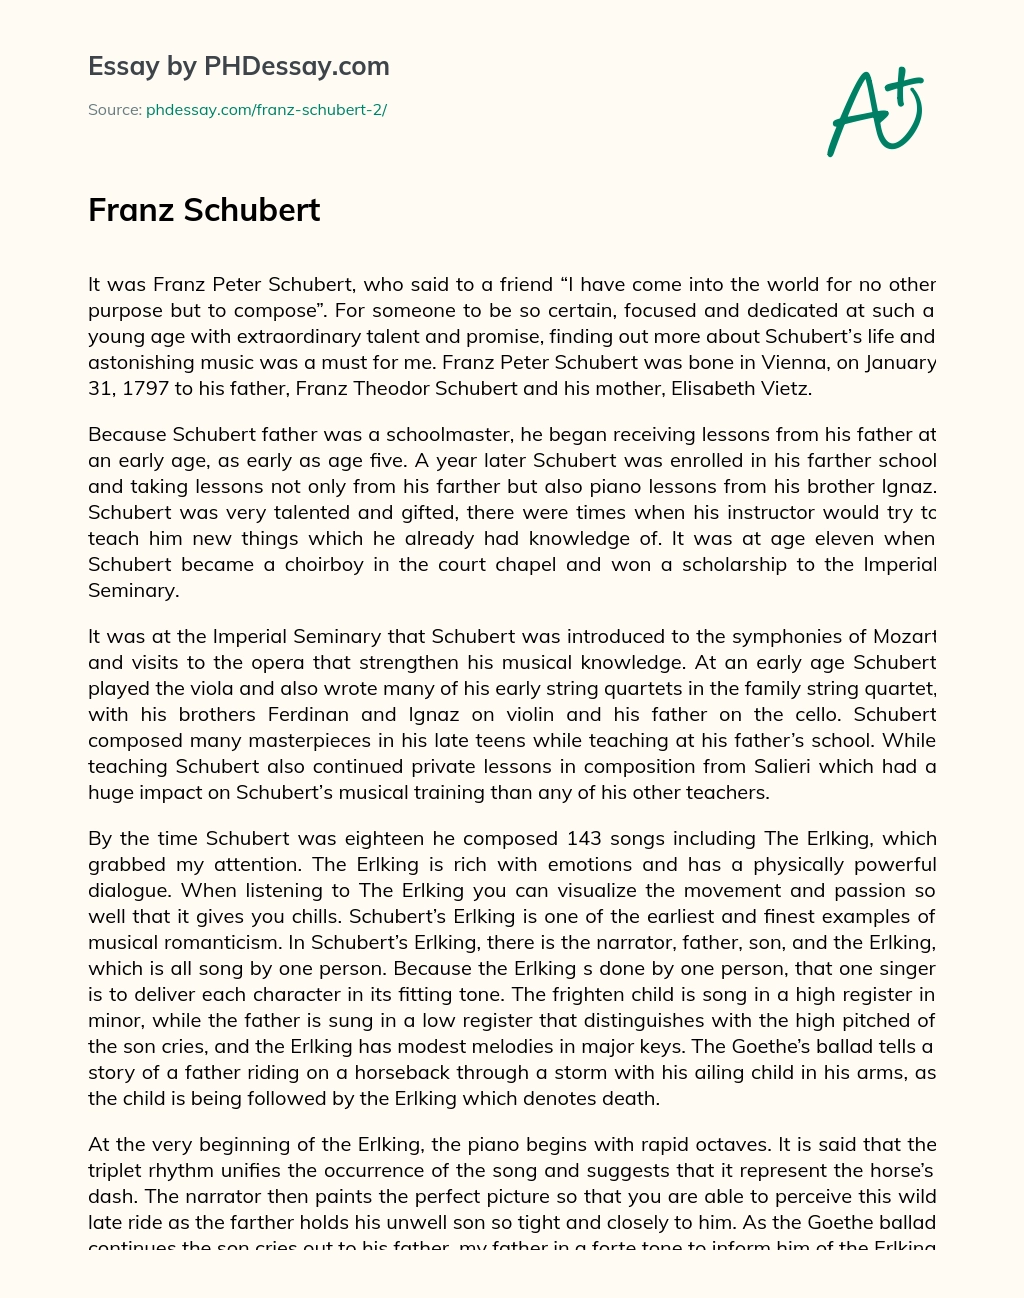 Franz Schubert essay